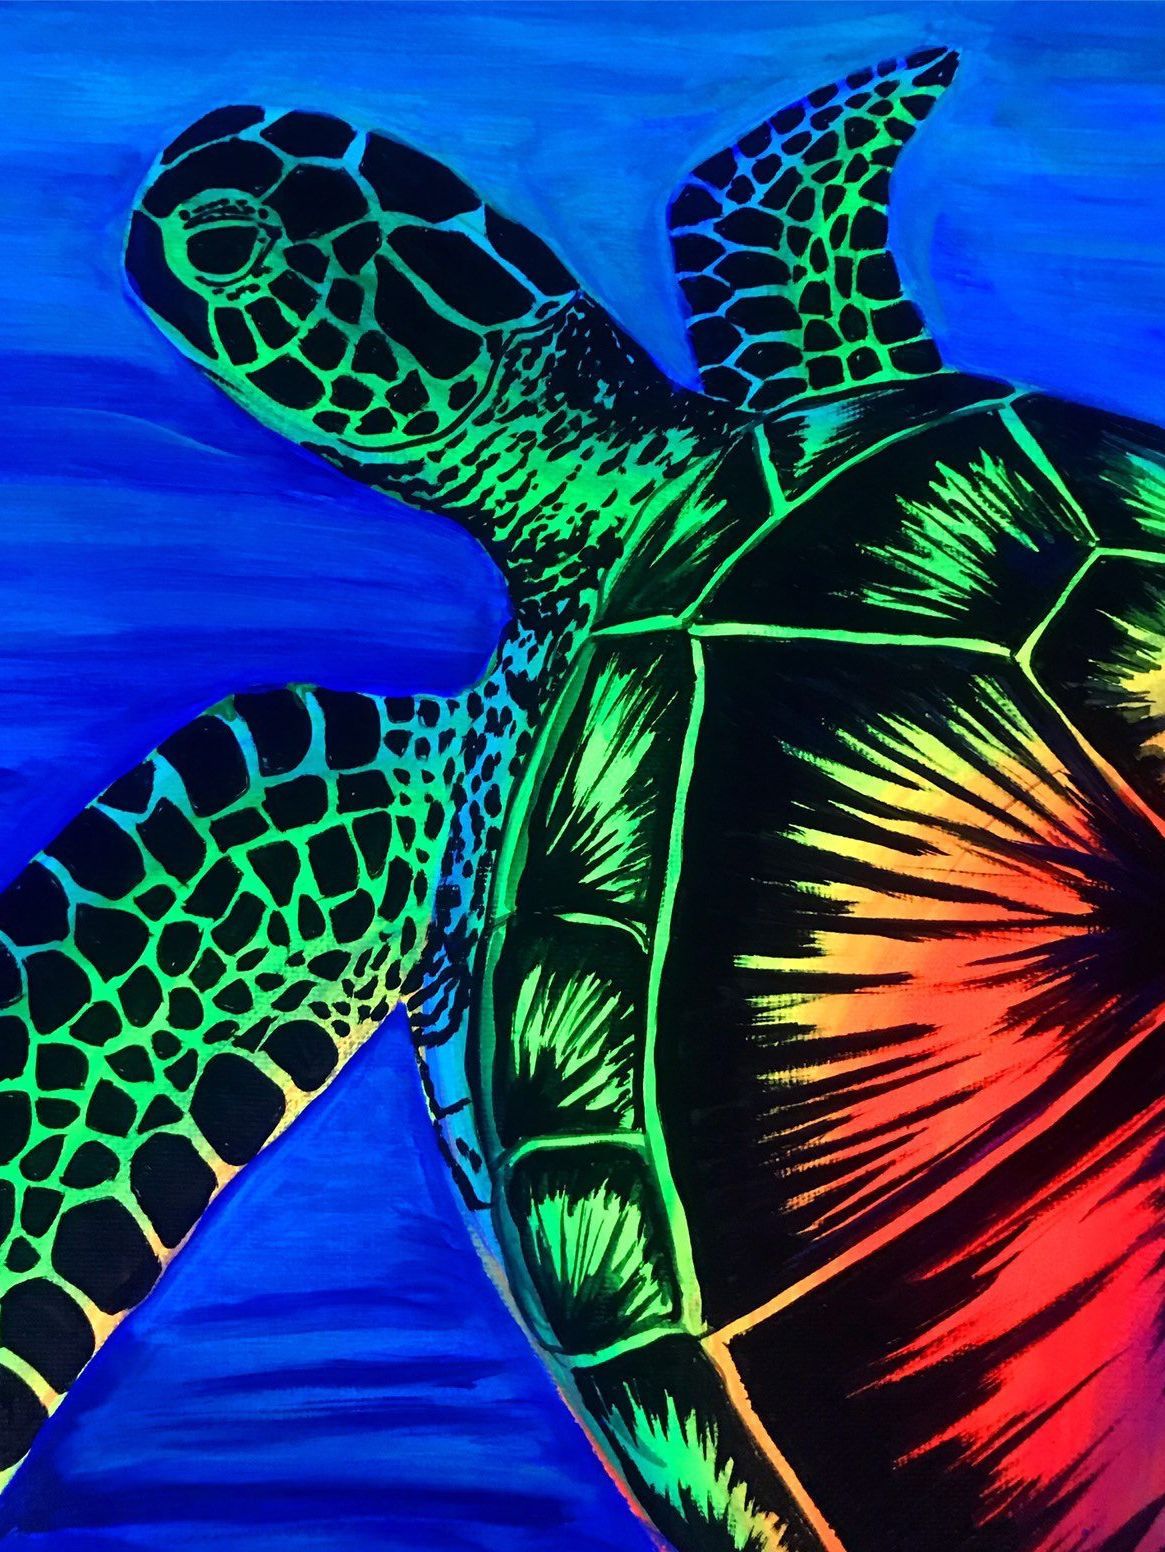 Sea turtle painting neon. Etsy. Turtle painting, Neon painting, Neon art painting